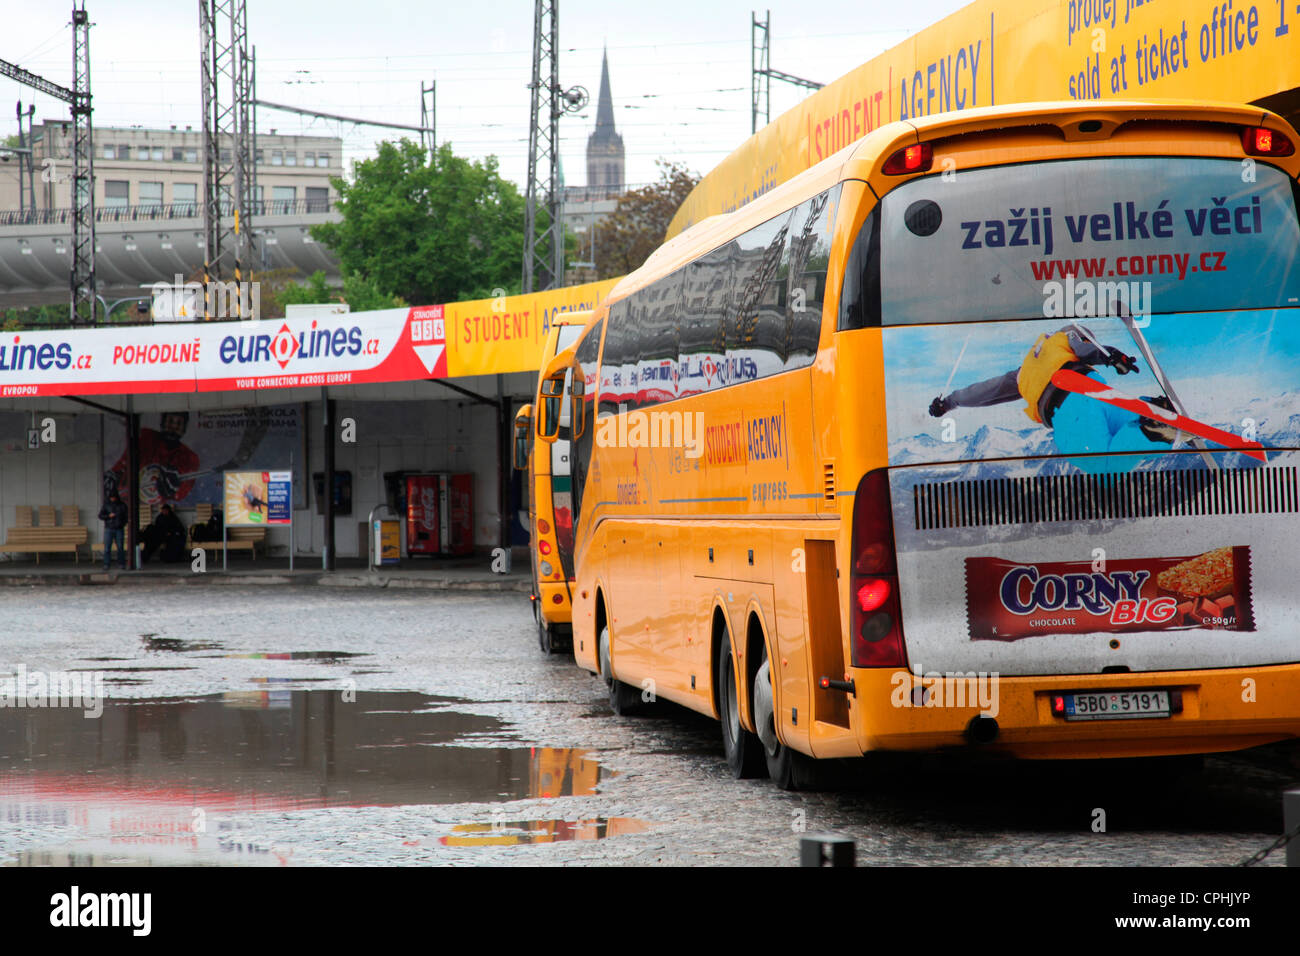 Florenc ist einer von mehreren Bushaltestellen in Prag und eine geschäftige Kreuzung für viele Reisende. Viele Busziele werden von der beliebten Studentenagentur betrieben Stockfoto